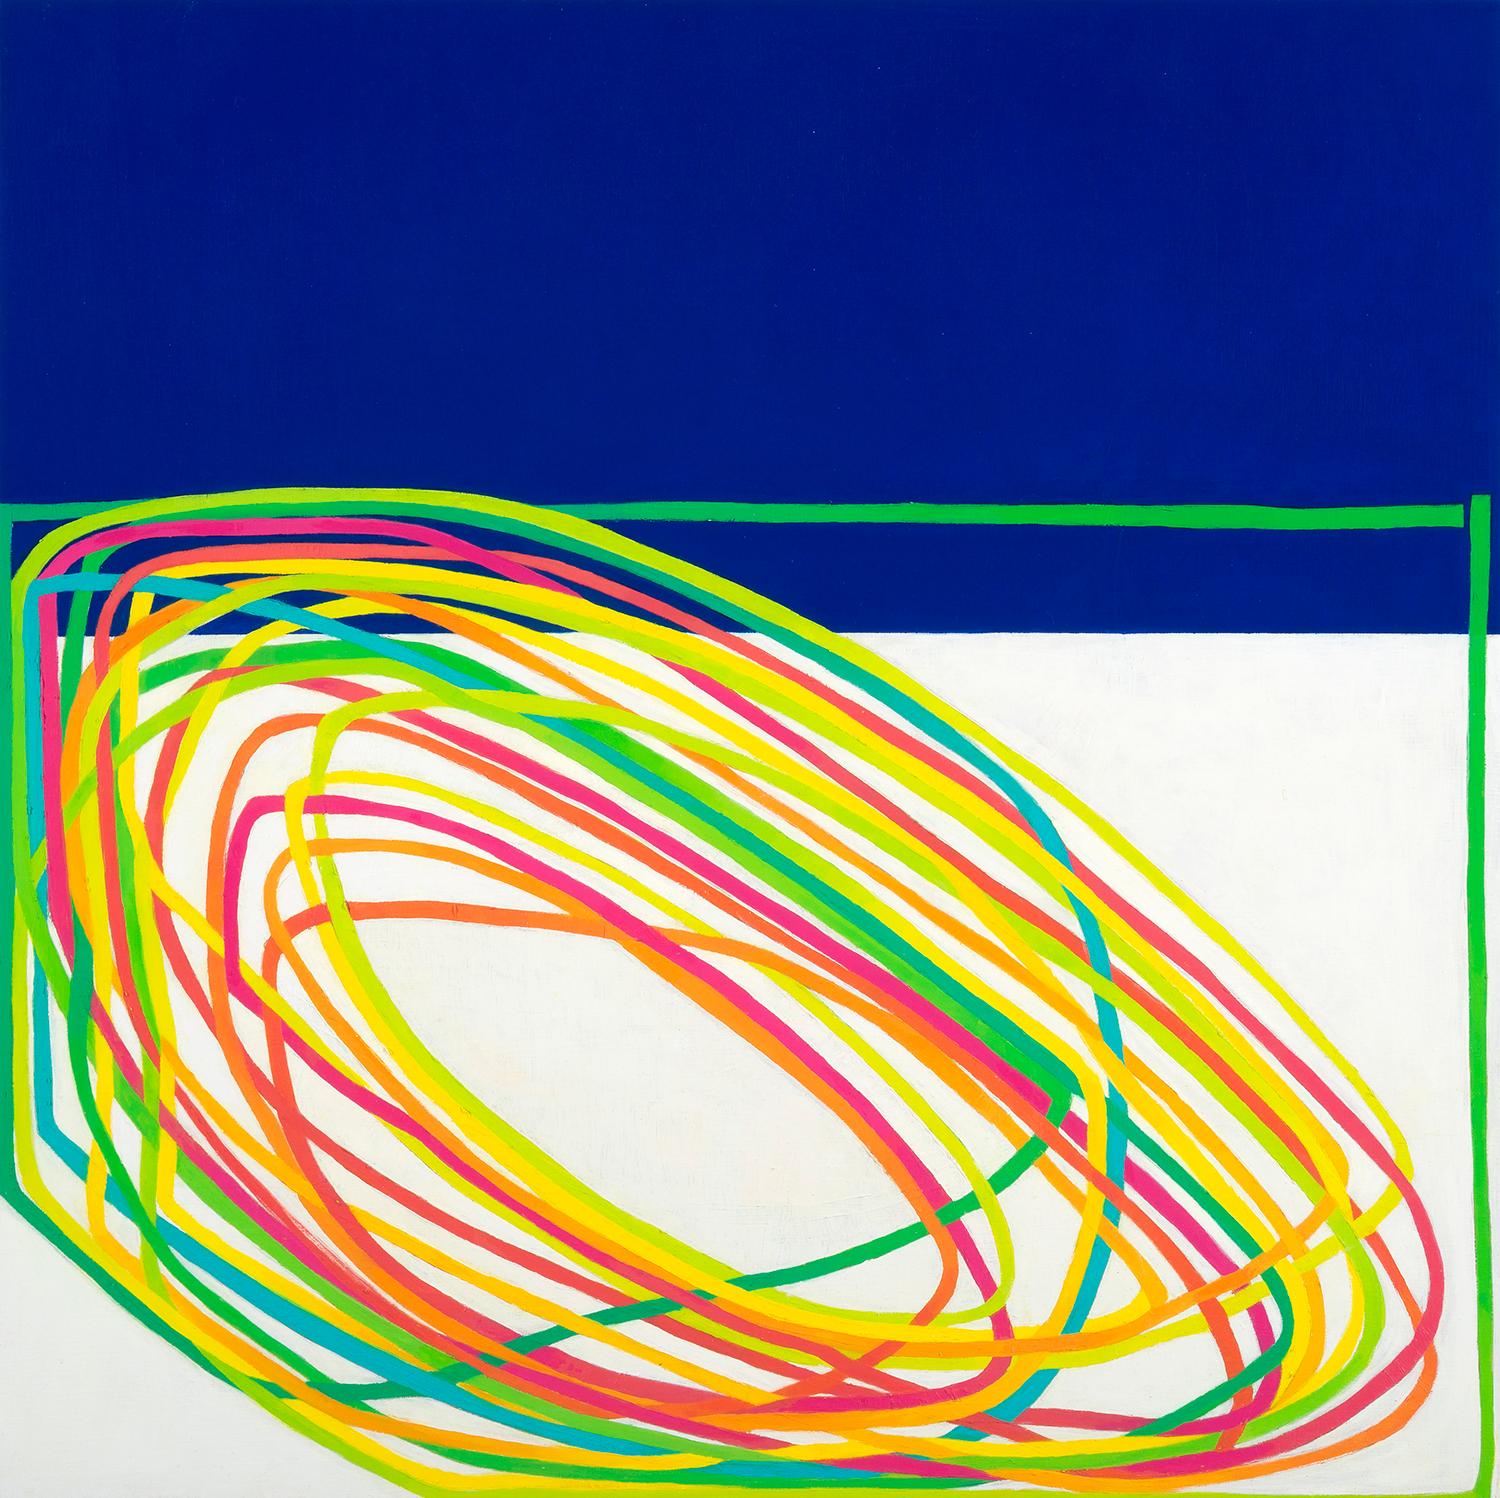 Paula Cahill Abstract Painting – Awry II: Ölgemälde mit grüner, gelber, orangefarbener und rosa Linie auf Meeresblau- und weißer Linie